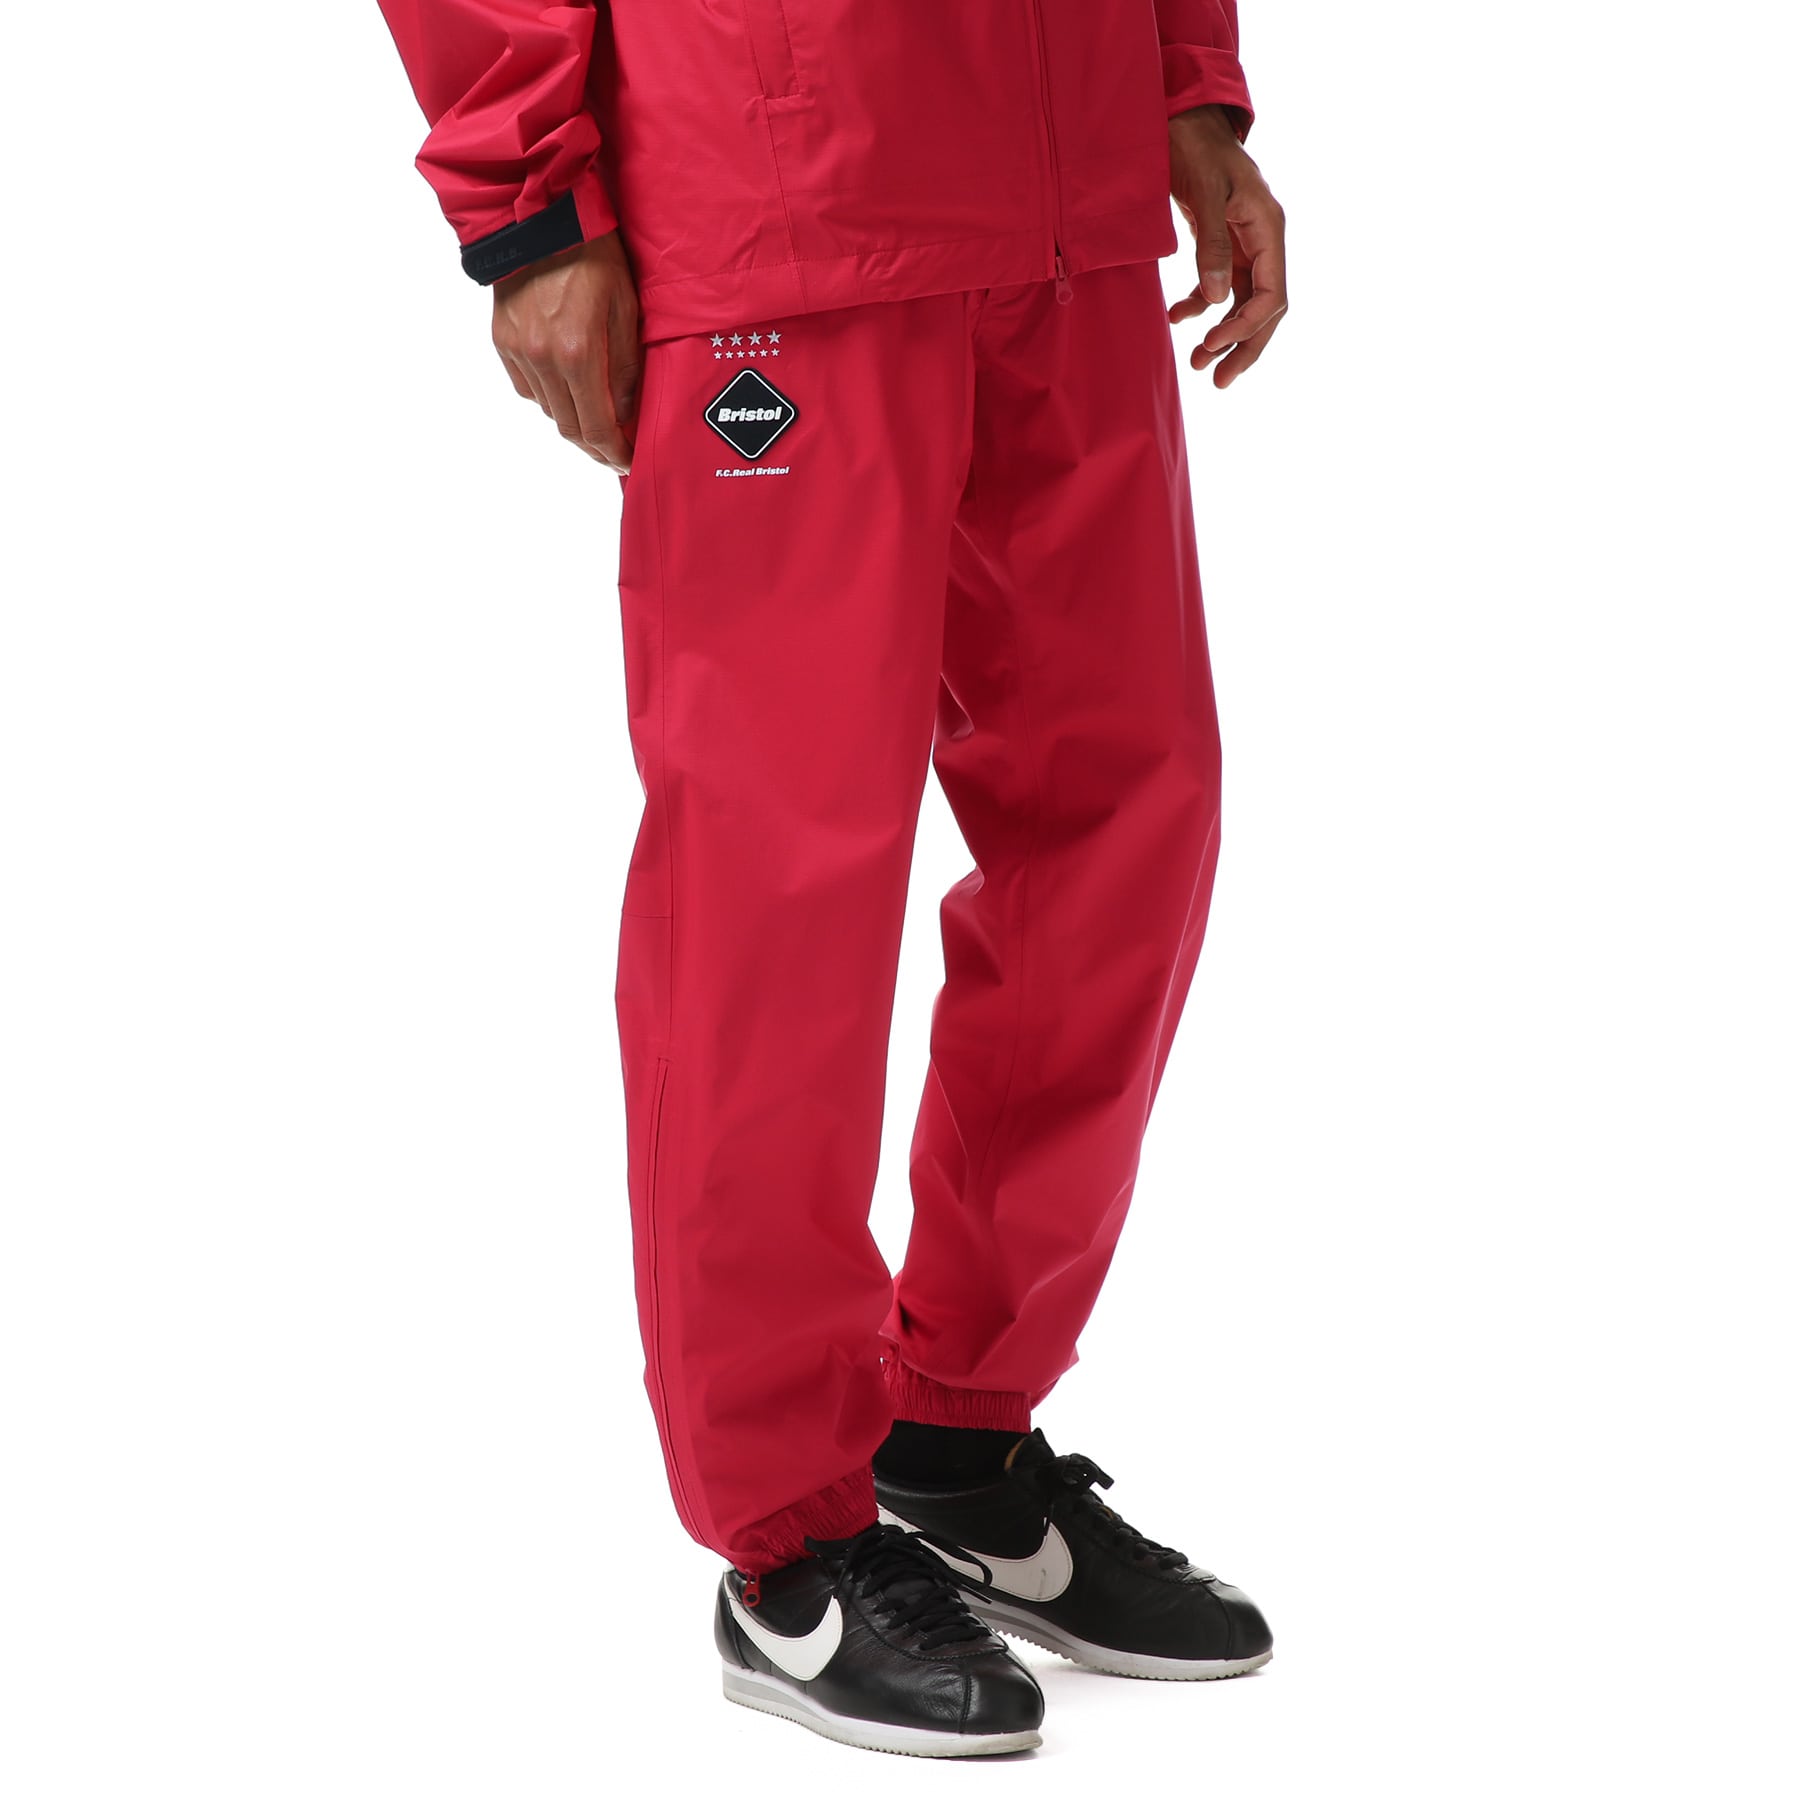 激安S 新品 送料無料 FCRB 21AW RAIN PANTS RED パンツ